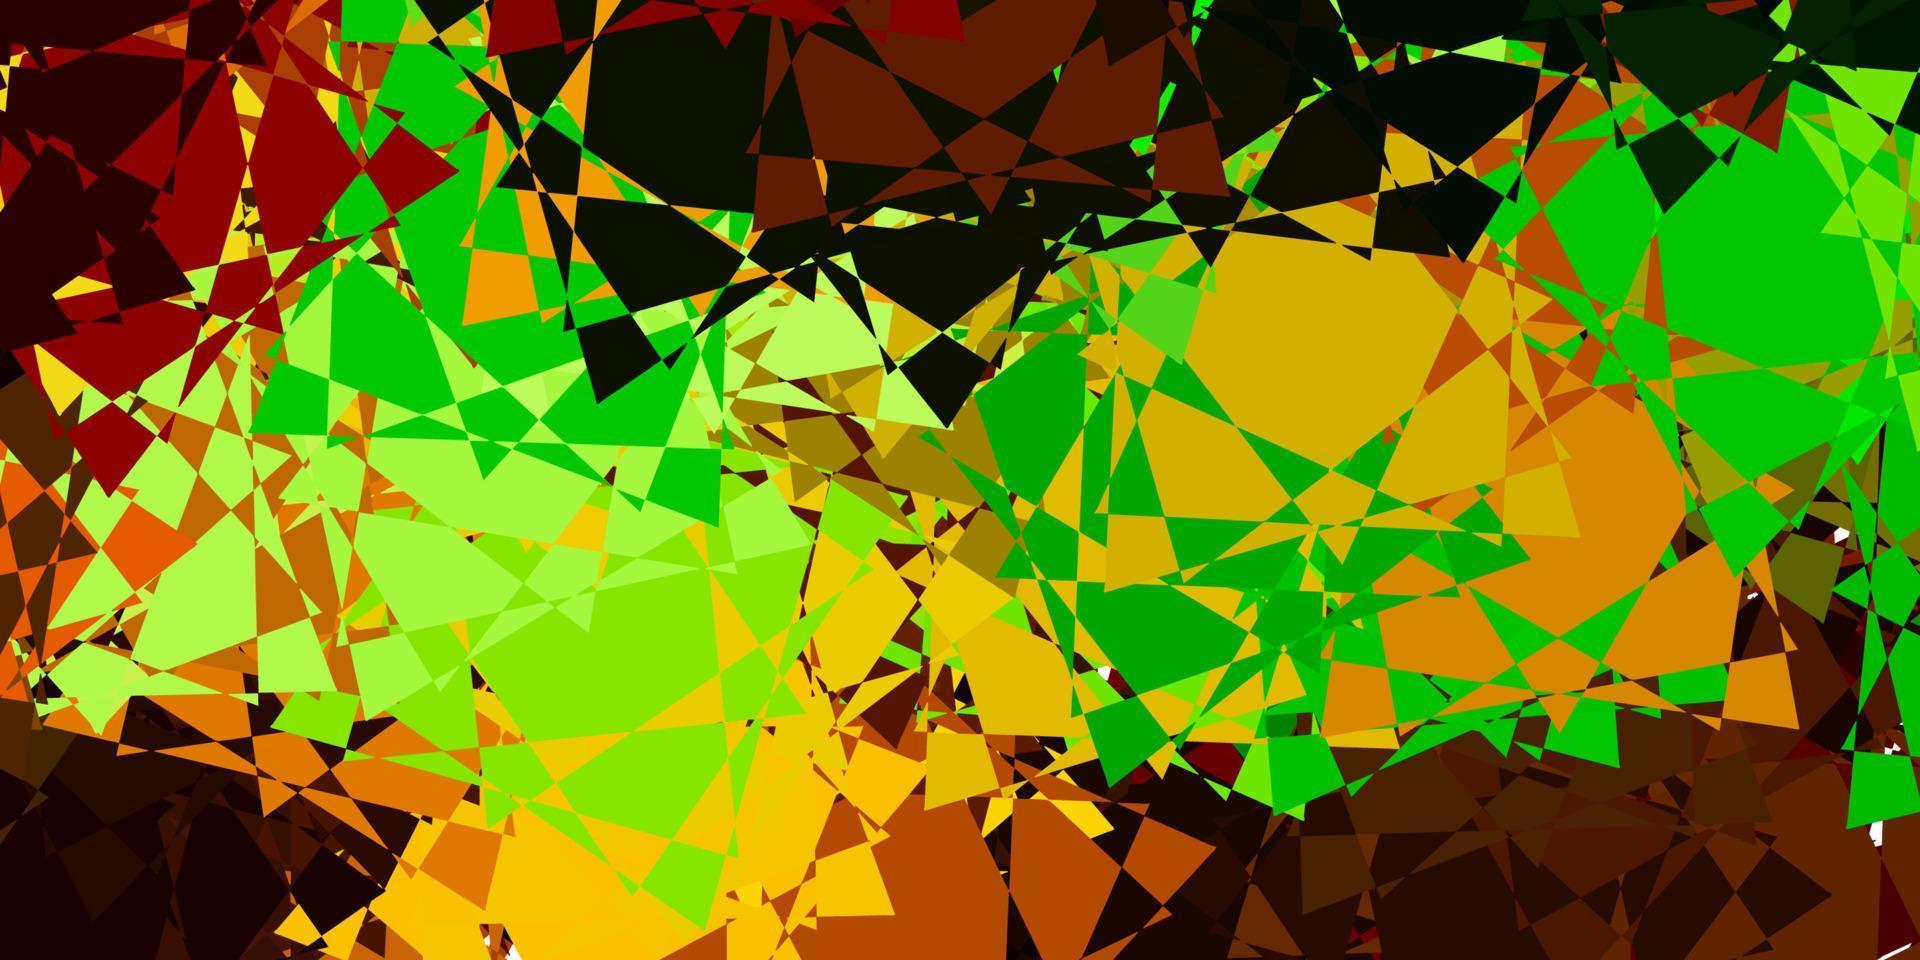 ljusgrön, gul vektorlayout med triangelformer. vektor